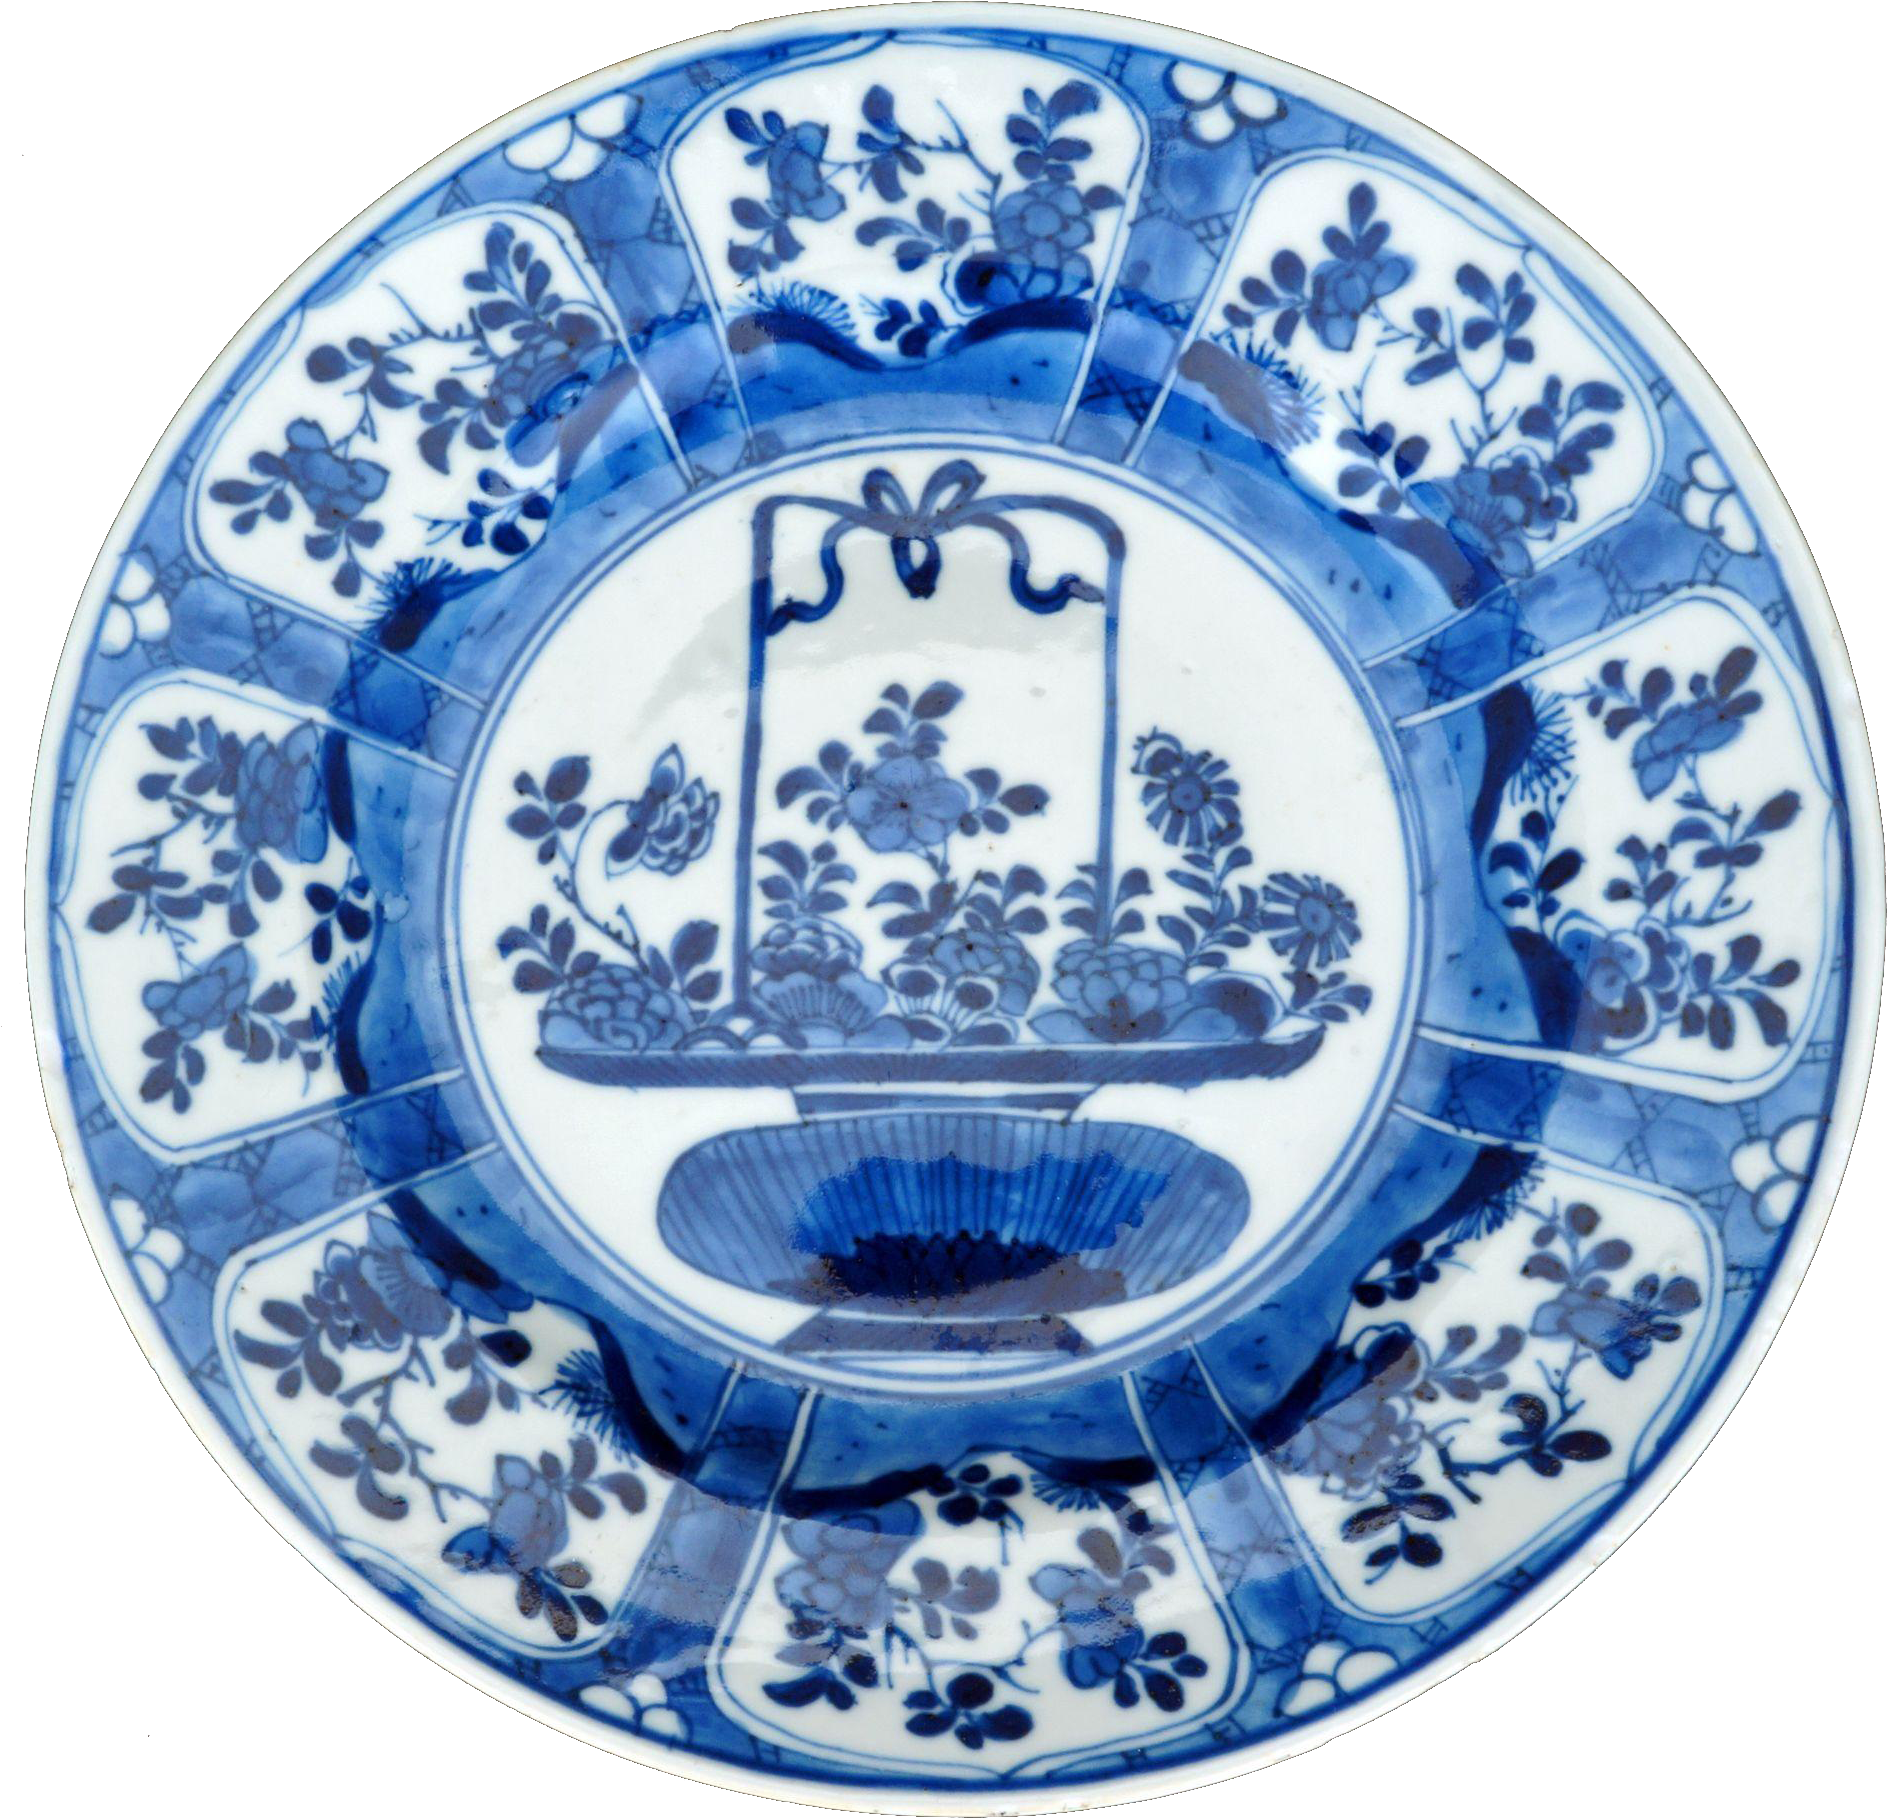 Assiettes chinoises en porcelaine bleue et blanche, porcelaine